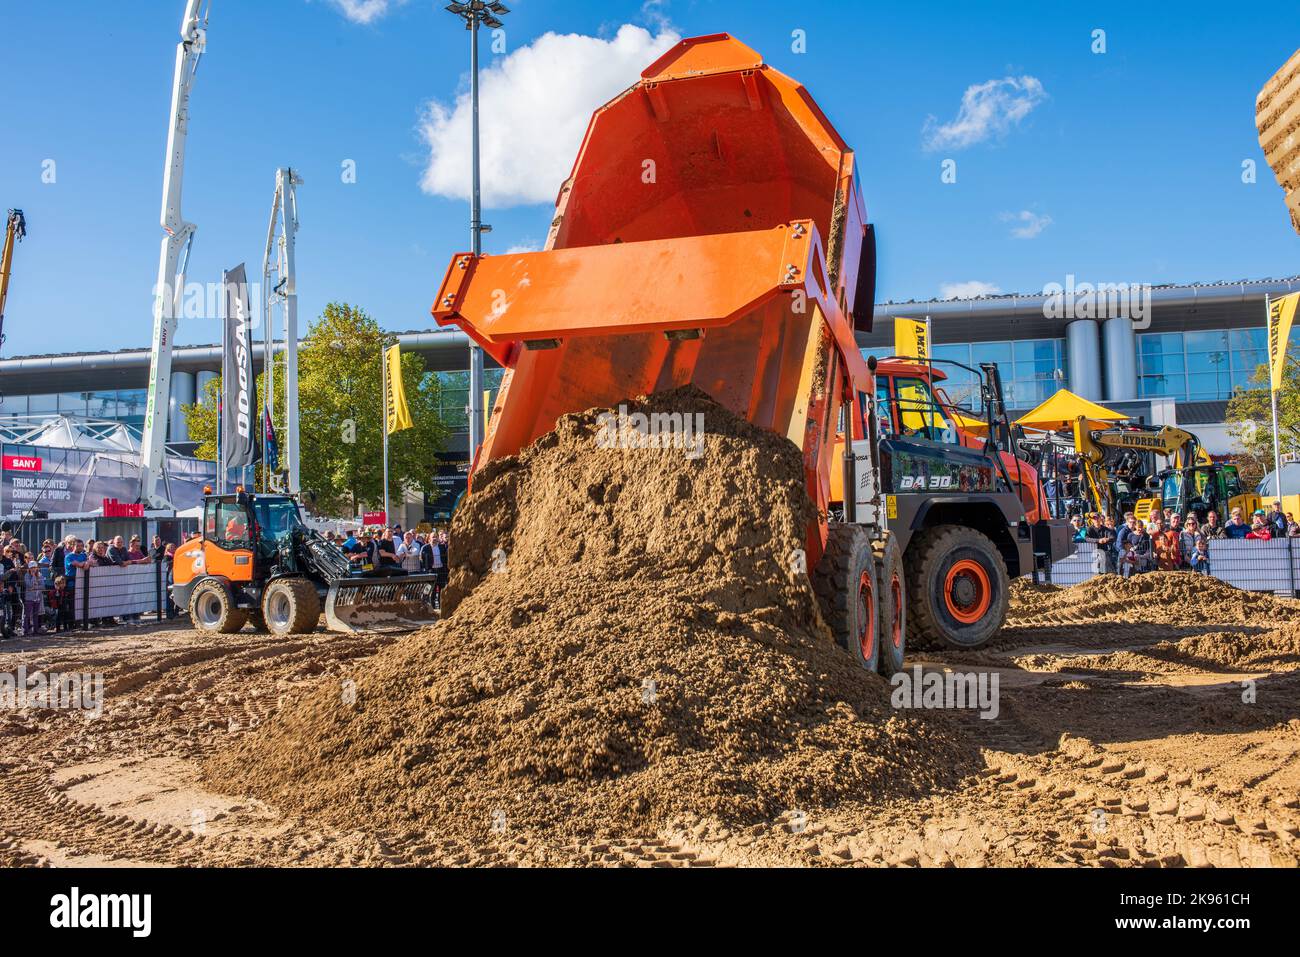 Bauma 2022 - Die größte Messe für Baumaschinen, Bergbaumaschinen und Baufahrzeuge in München, hier mit einer Demonstration der Firma Doosan Foto Stock